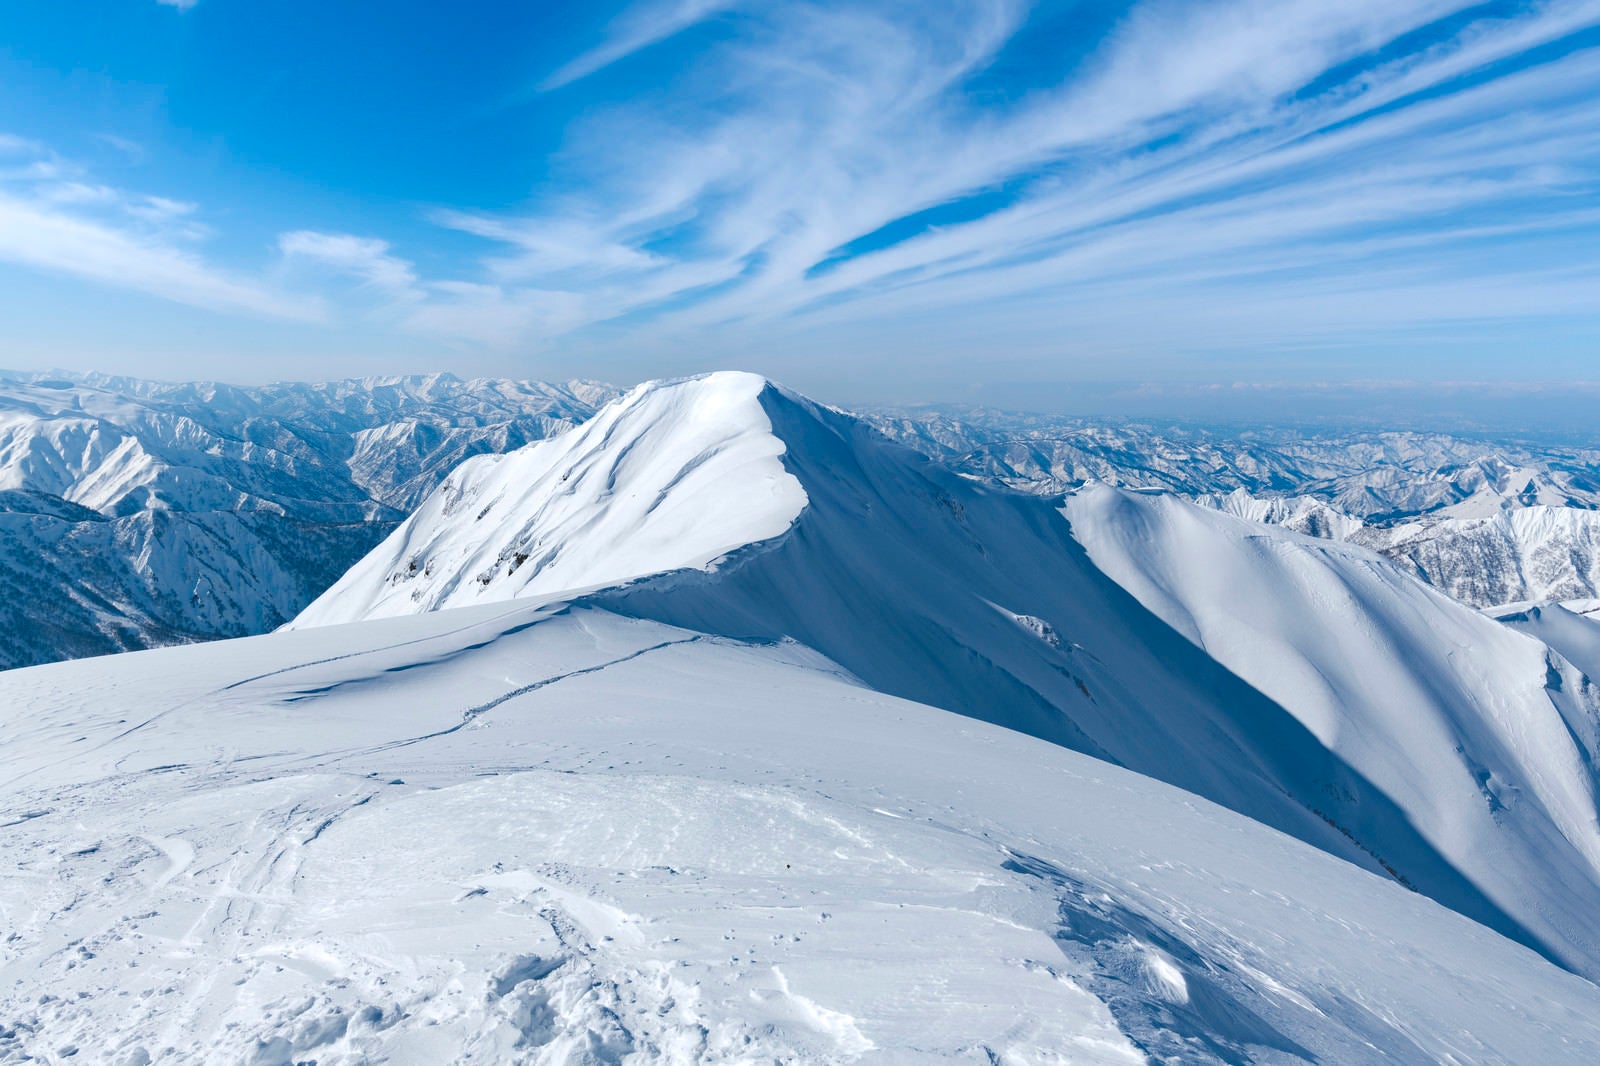 「茂倉岳の斜面へとドロップしてゆくスノーボーダー」の写真